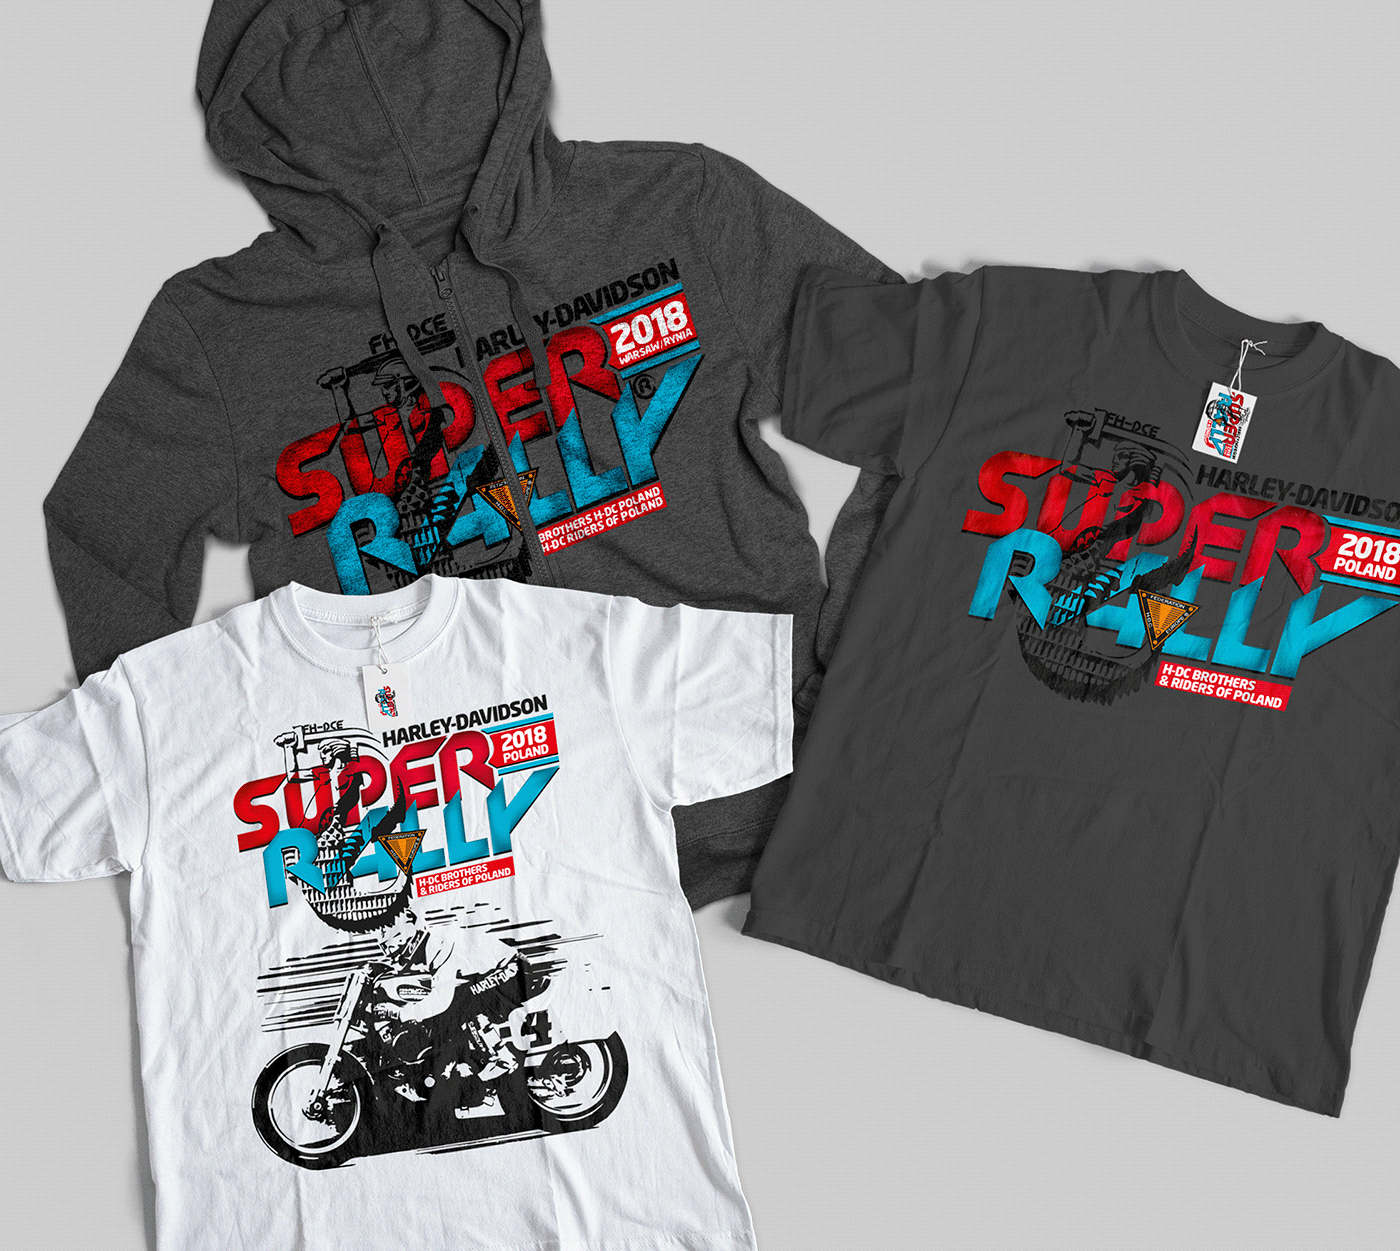 Harley Davidson jazowski rollohead t-shirts